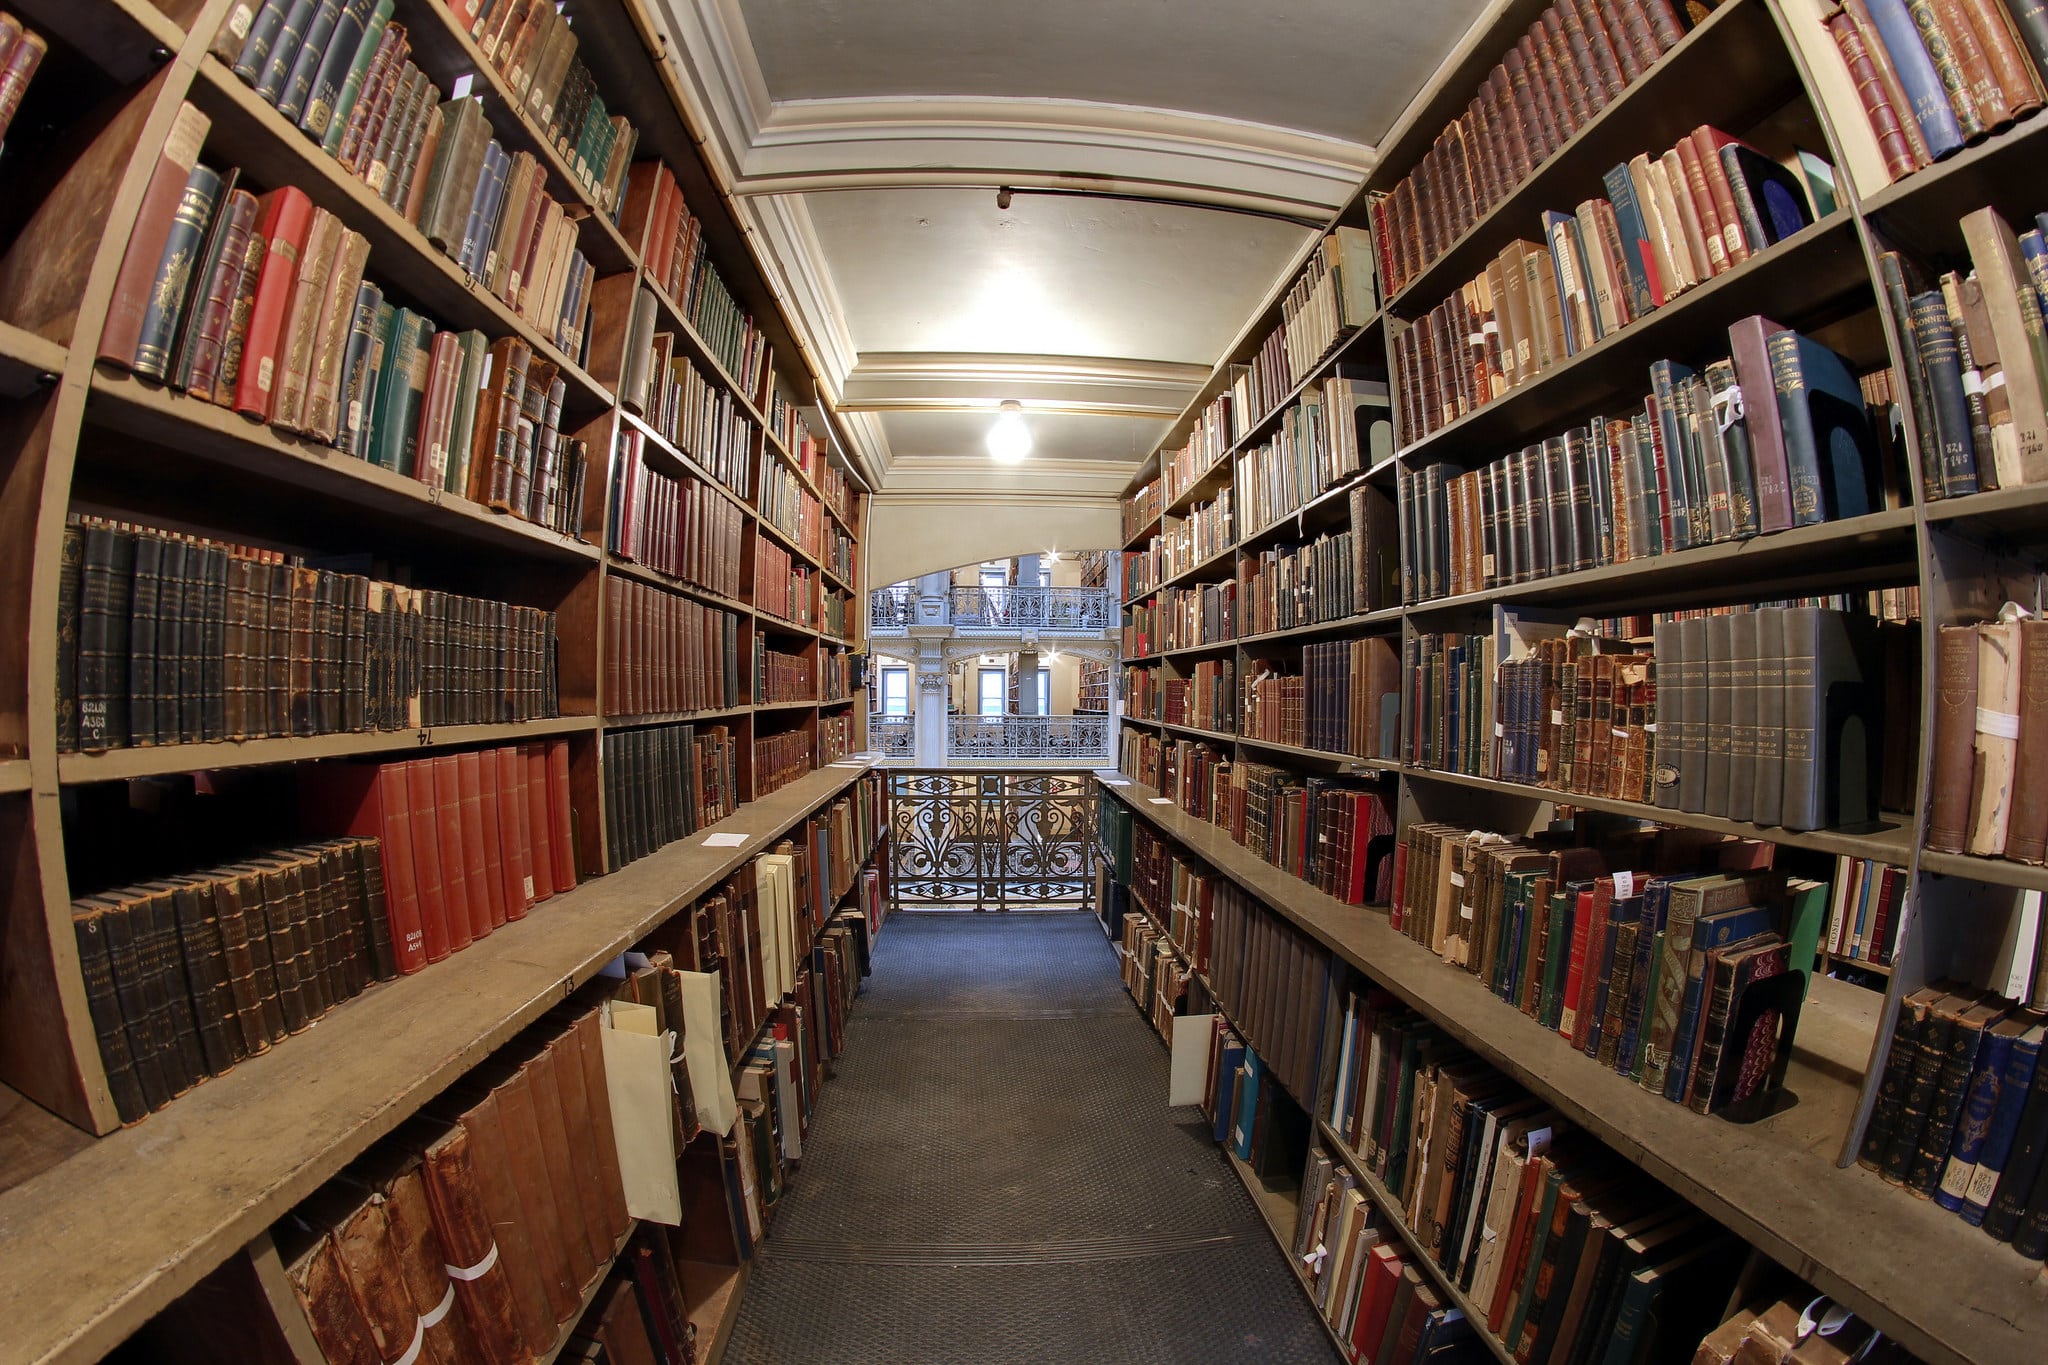 Первая доступна библиотека. Библиокеи Джоджа пиоди. Библиотека Джорджа Пибоди. Библиотека Джорджа Пибоди, Балтимор, Мэриленд, США. Библиотека имени Джорджа Пибоди, Балтимор, штат Мэриленд.